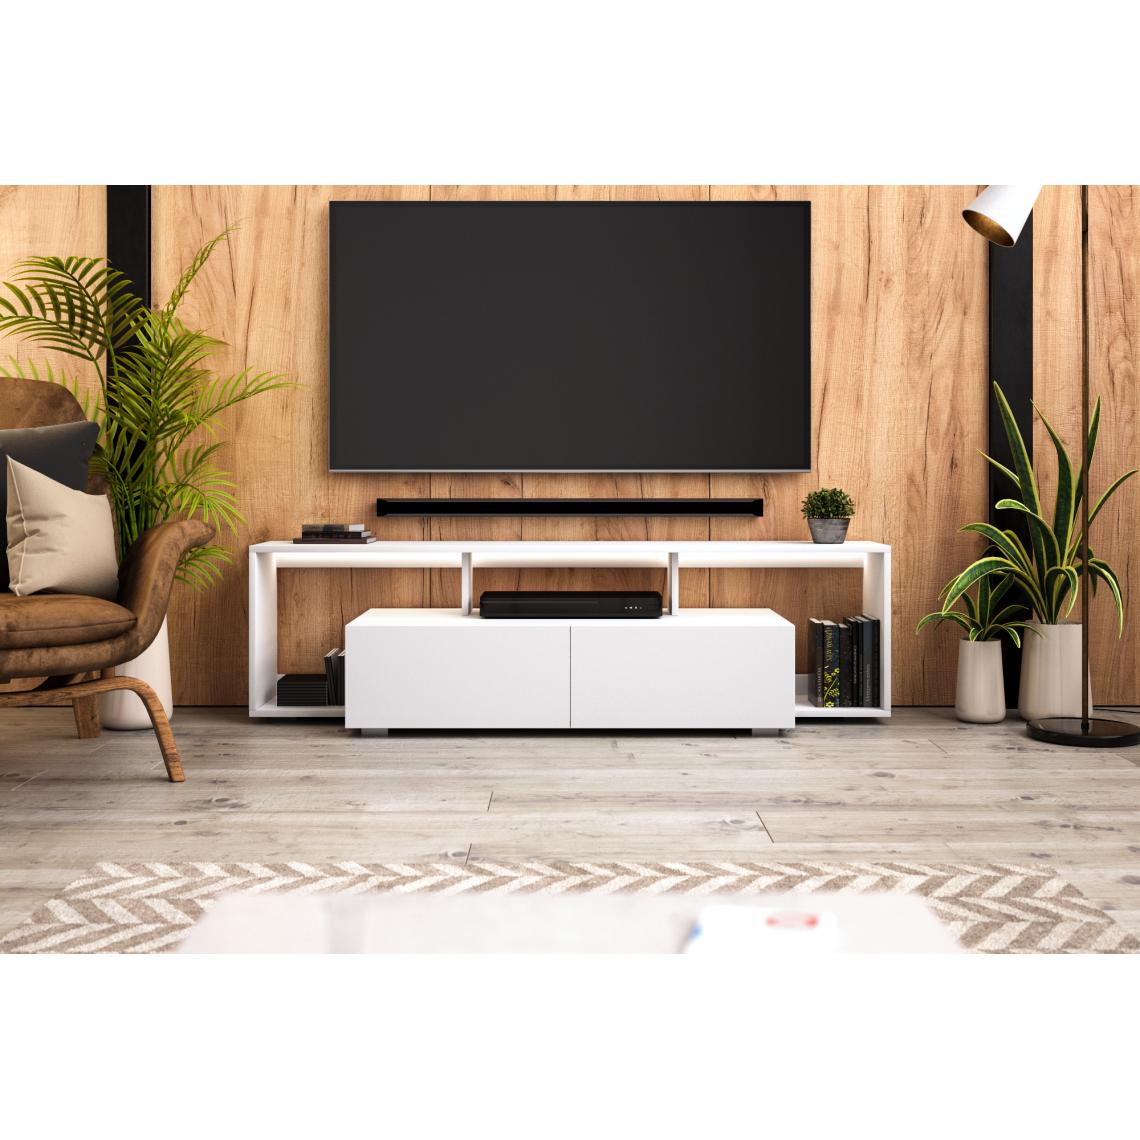 Vivaldi - VIVAMDI Meuble TV REN - 150 cm - blanc mat - avec LED - style moderne - Meubles TV, Hi-Fi